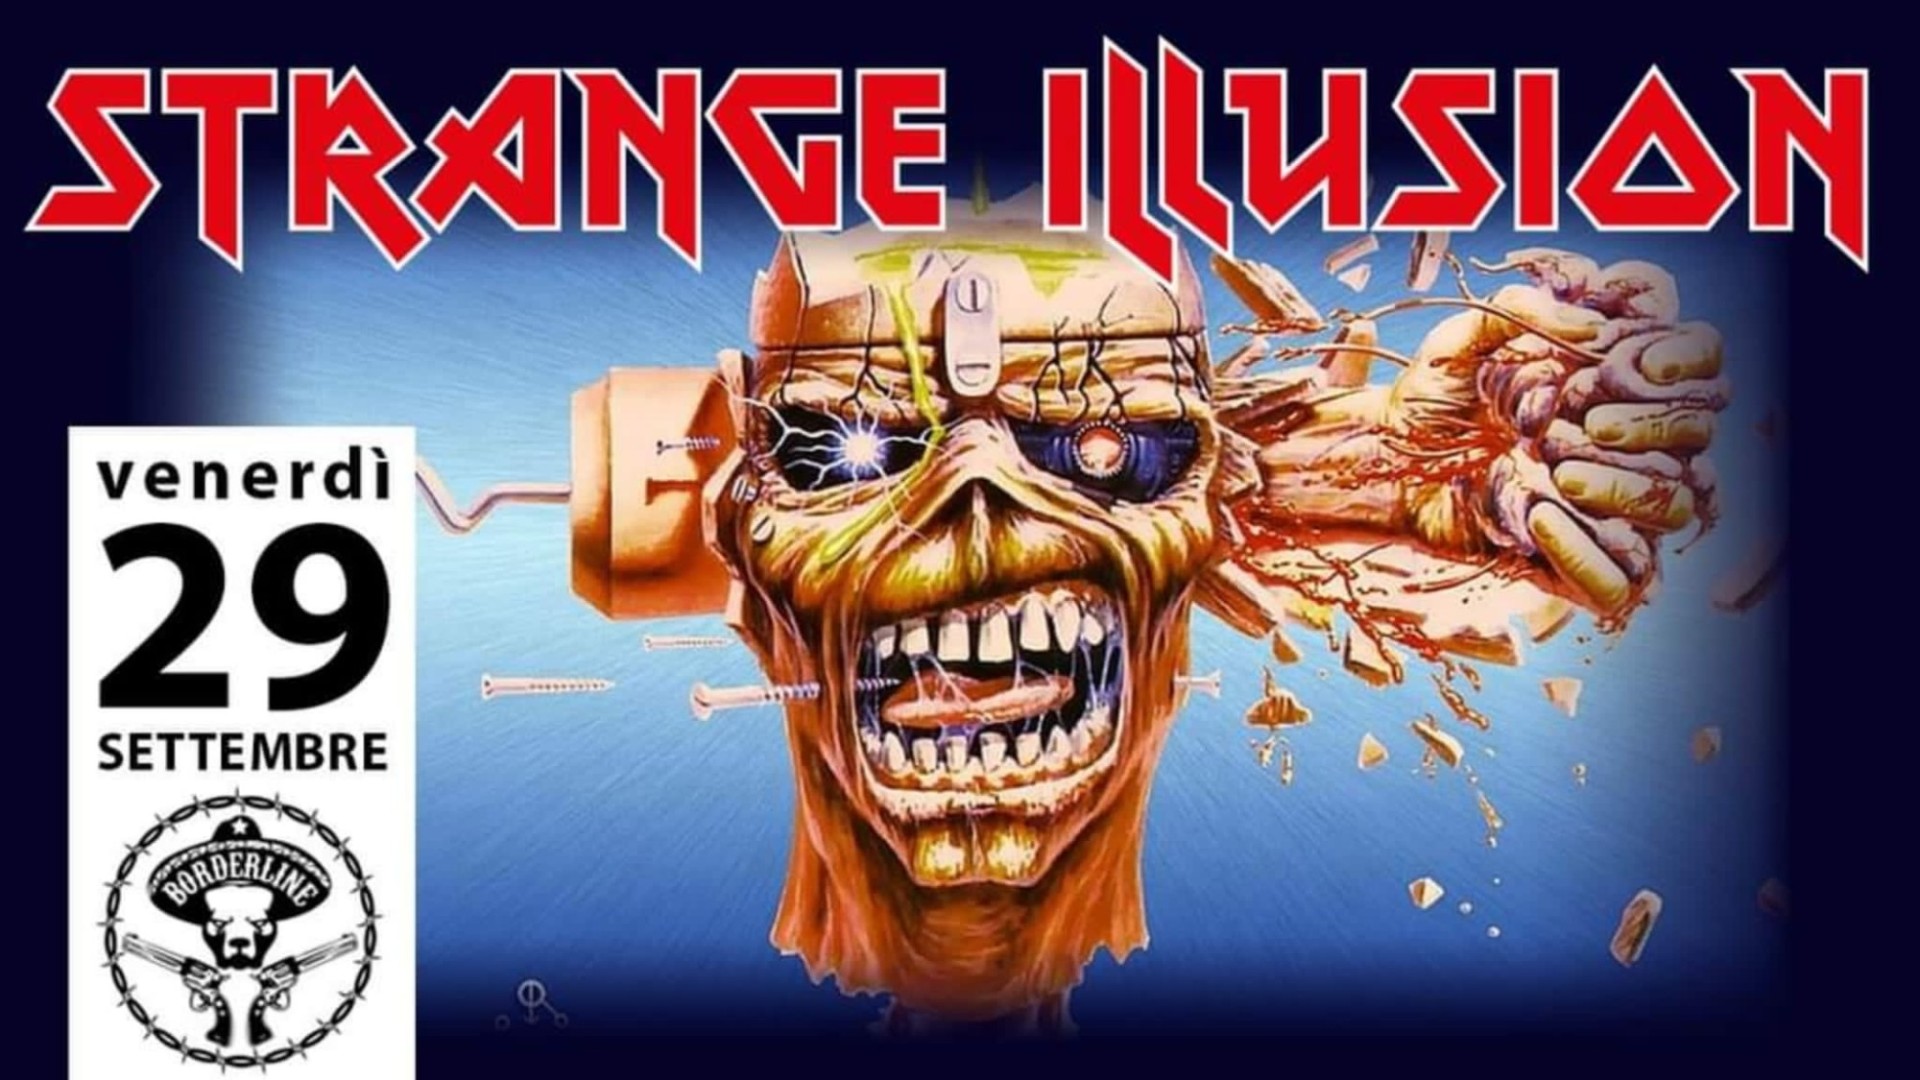 Start New Season - Strange Illusion - Iron Maiden
Tribute